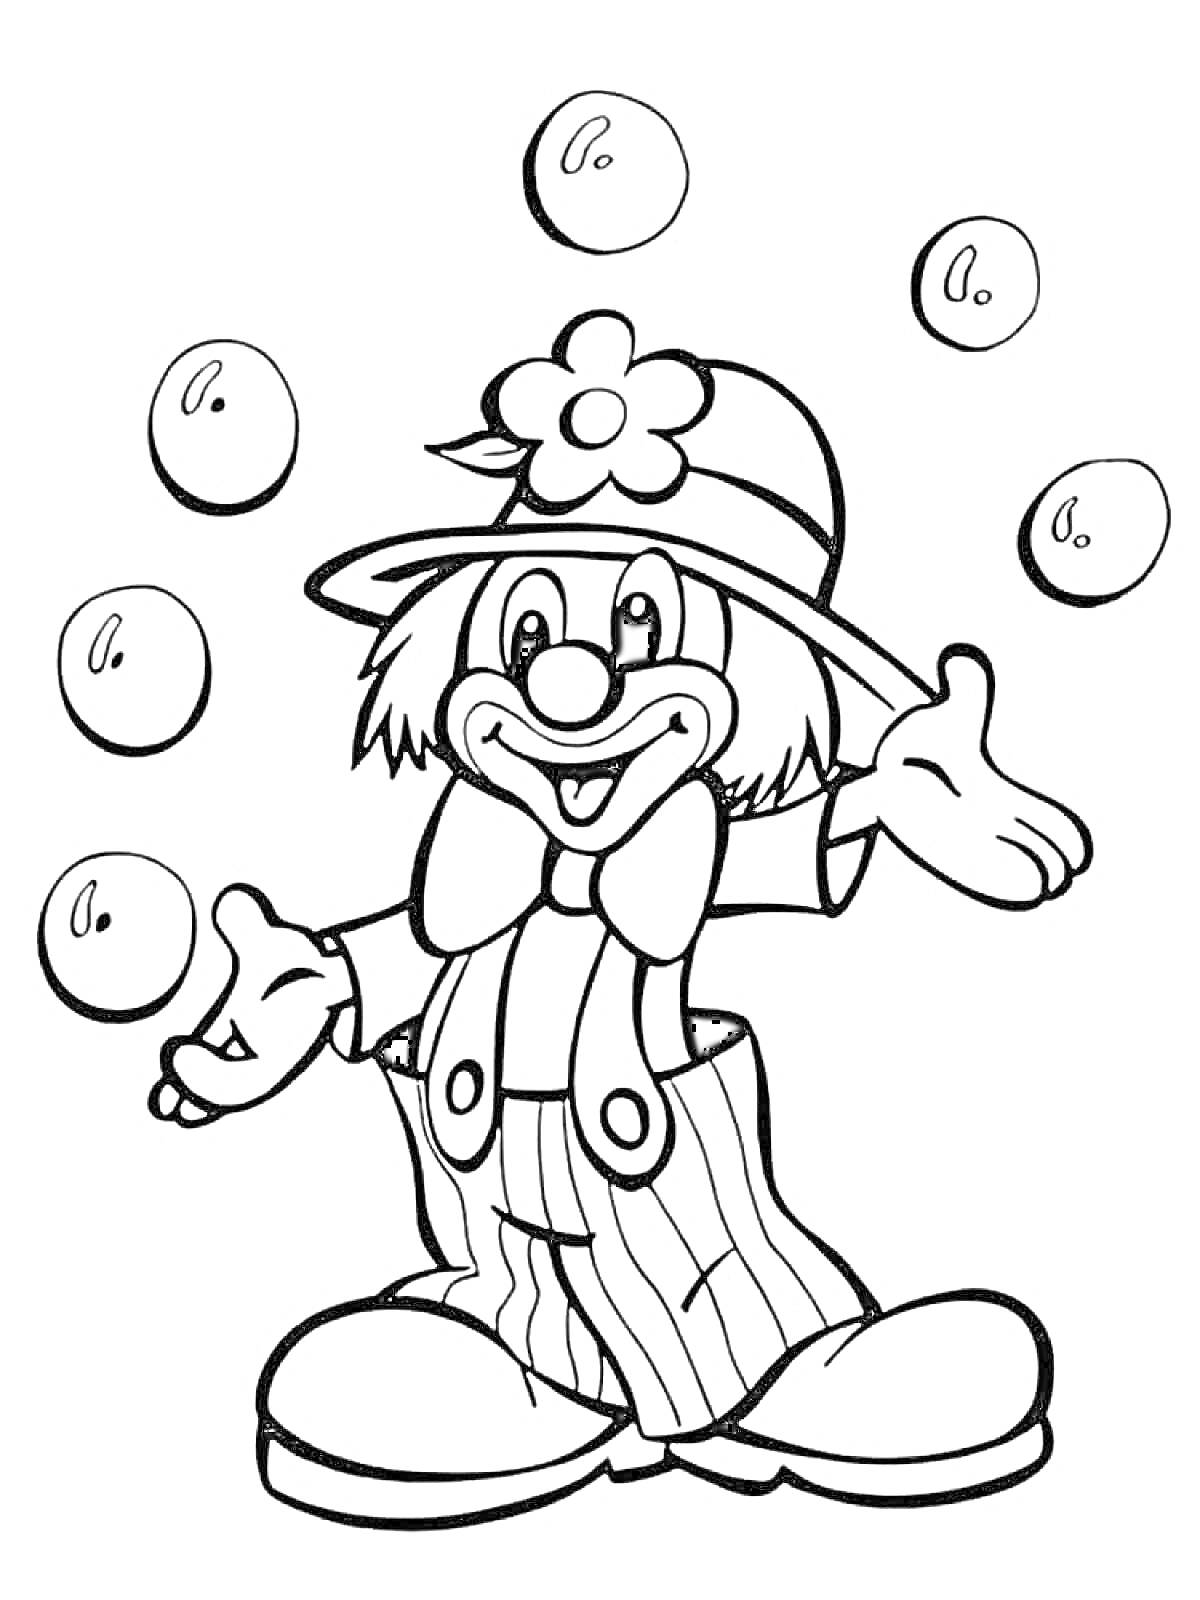 Клоун, жонглирующий шестью мячами